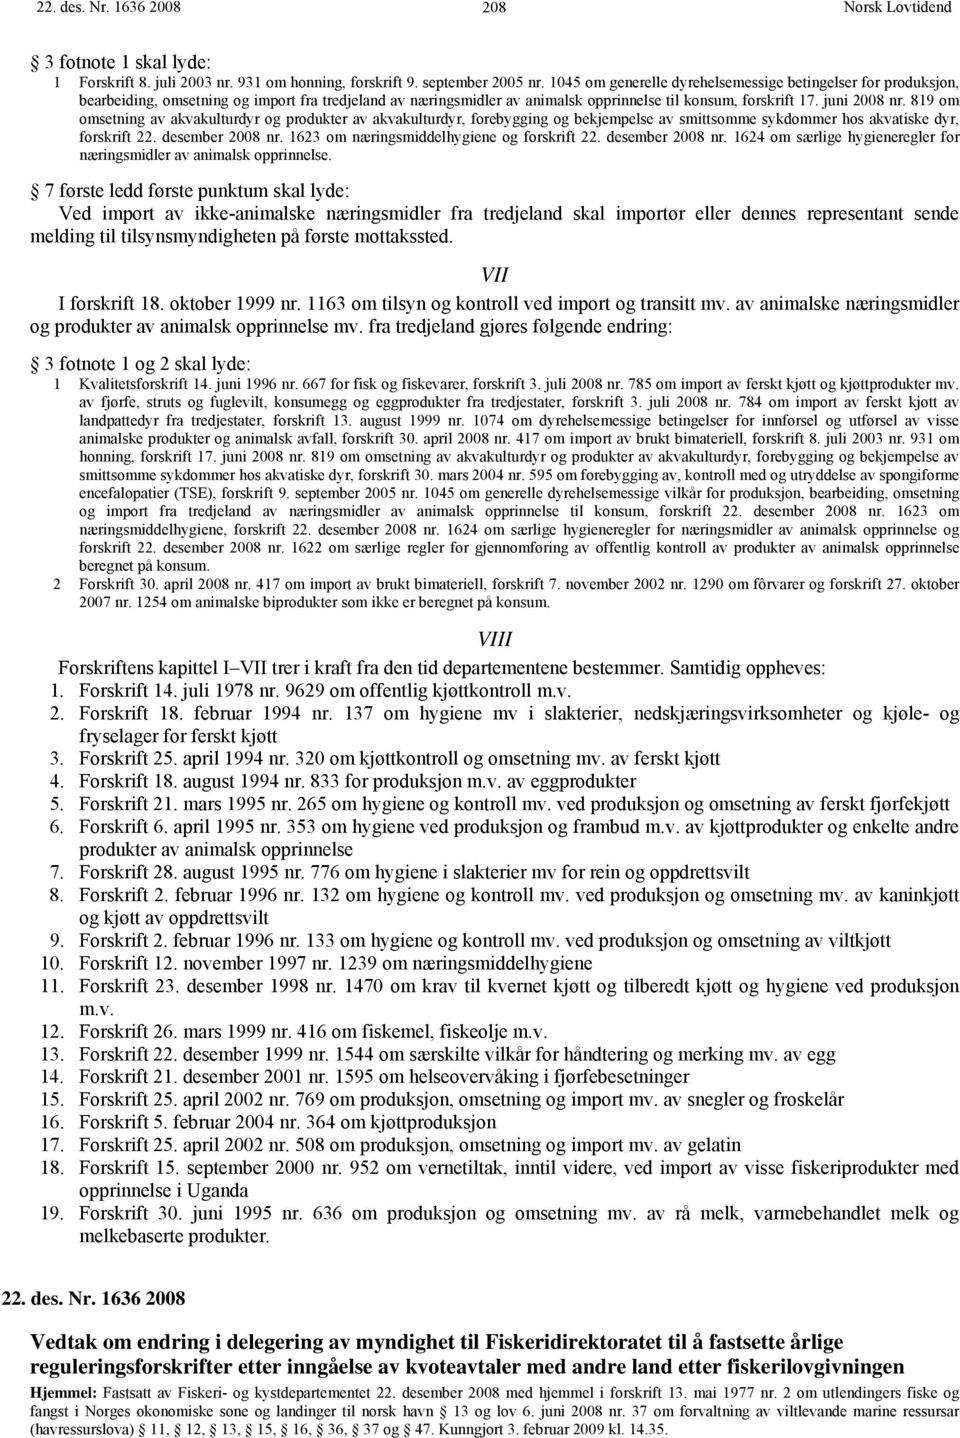 819 om omsetning av akvakulturdyr og produkter av akvakulturdyr, forebygging og bekjempelse av smittsomme sykdommer hos akvatiske dyr, forskrift 22. desember 2008 nr.